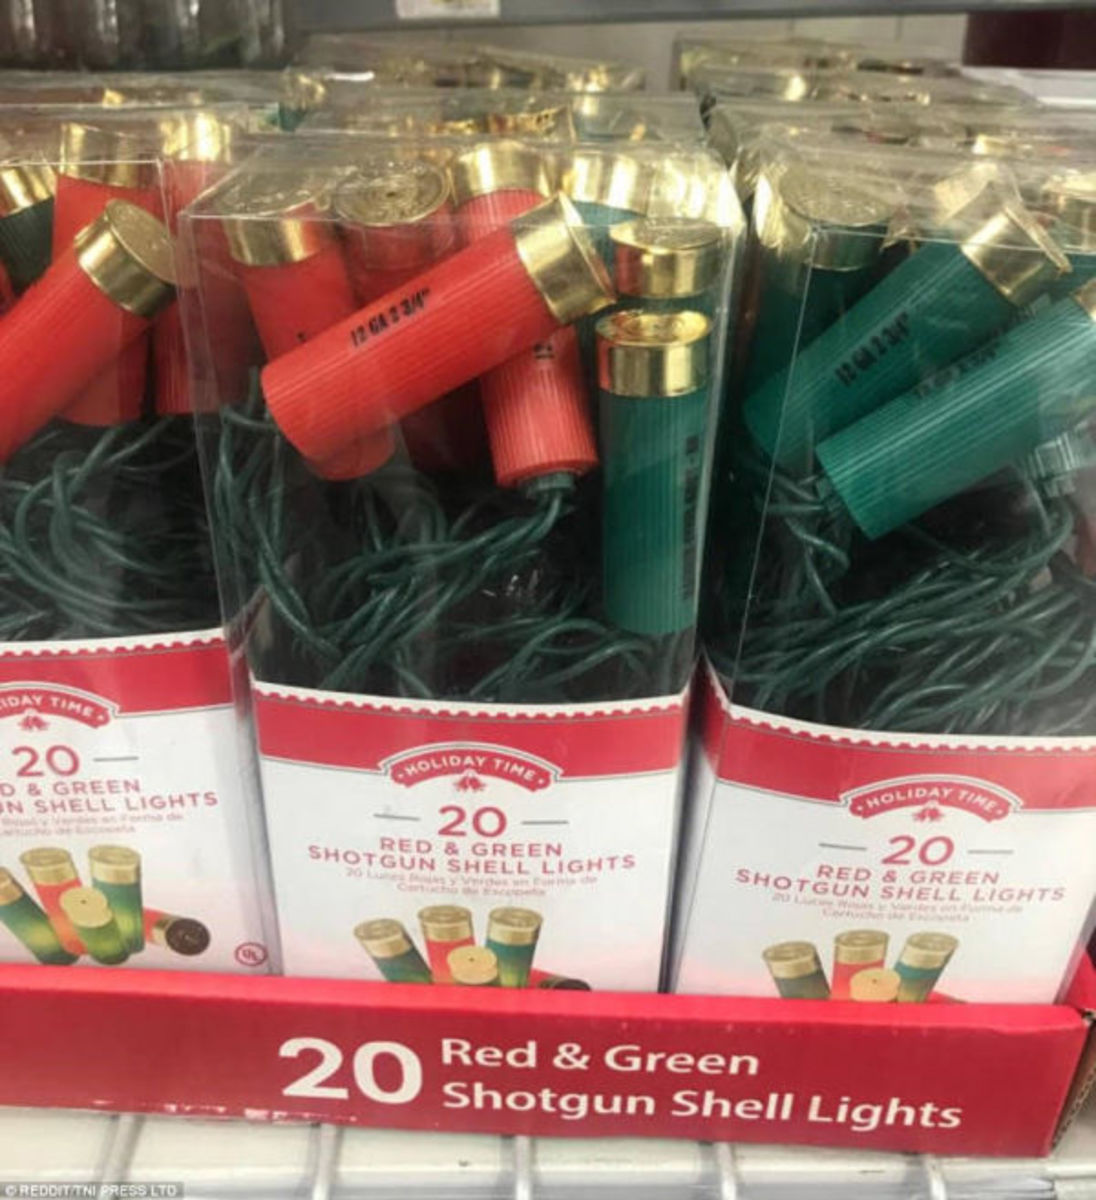 Το κόκκινο και το πράσινο κάνει κάθε σύμβολο θανάτου να φαίνεται λίγο πιο χριστουγεννιάτικο!